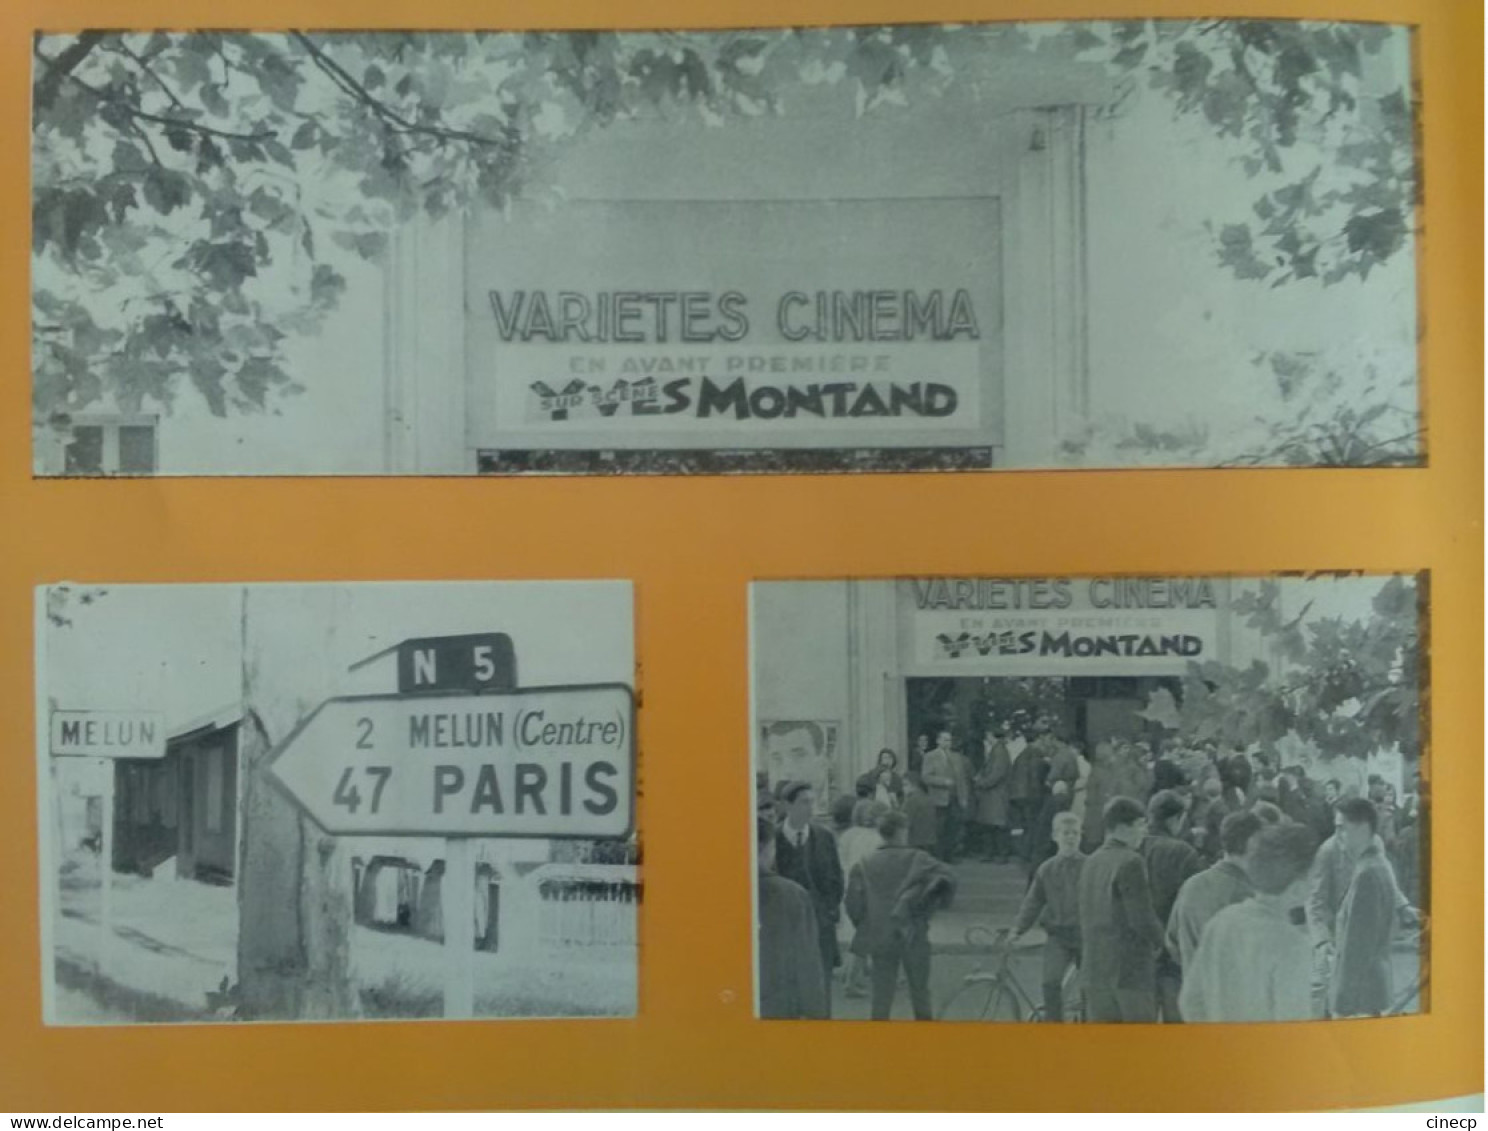 PROGRAMME DE CONCERT ORIGINAL CHANTEUR Récital 1963 Yves MONTAND Tournée internationale superbes photos publicité parfum